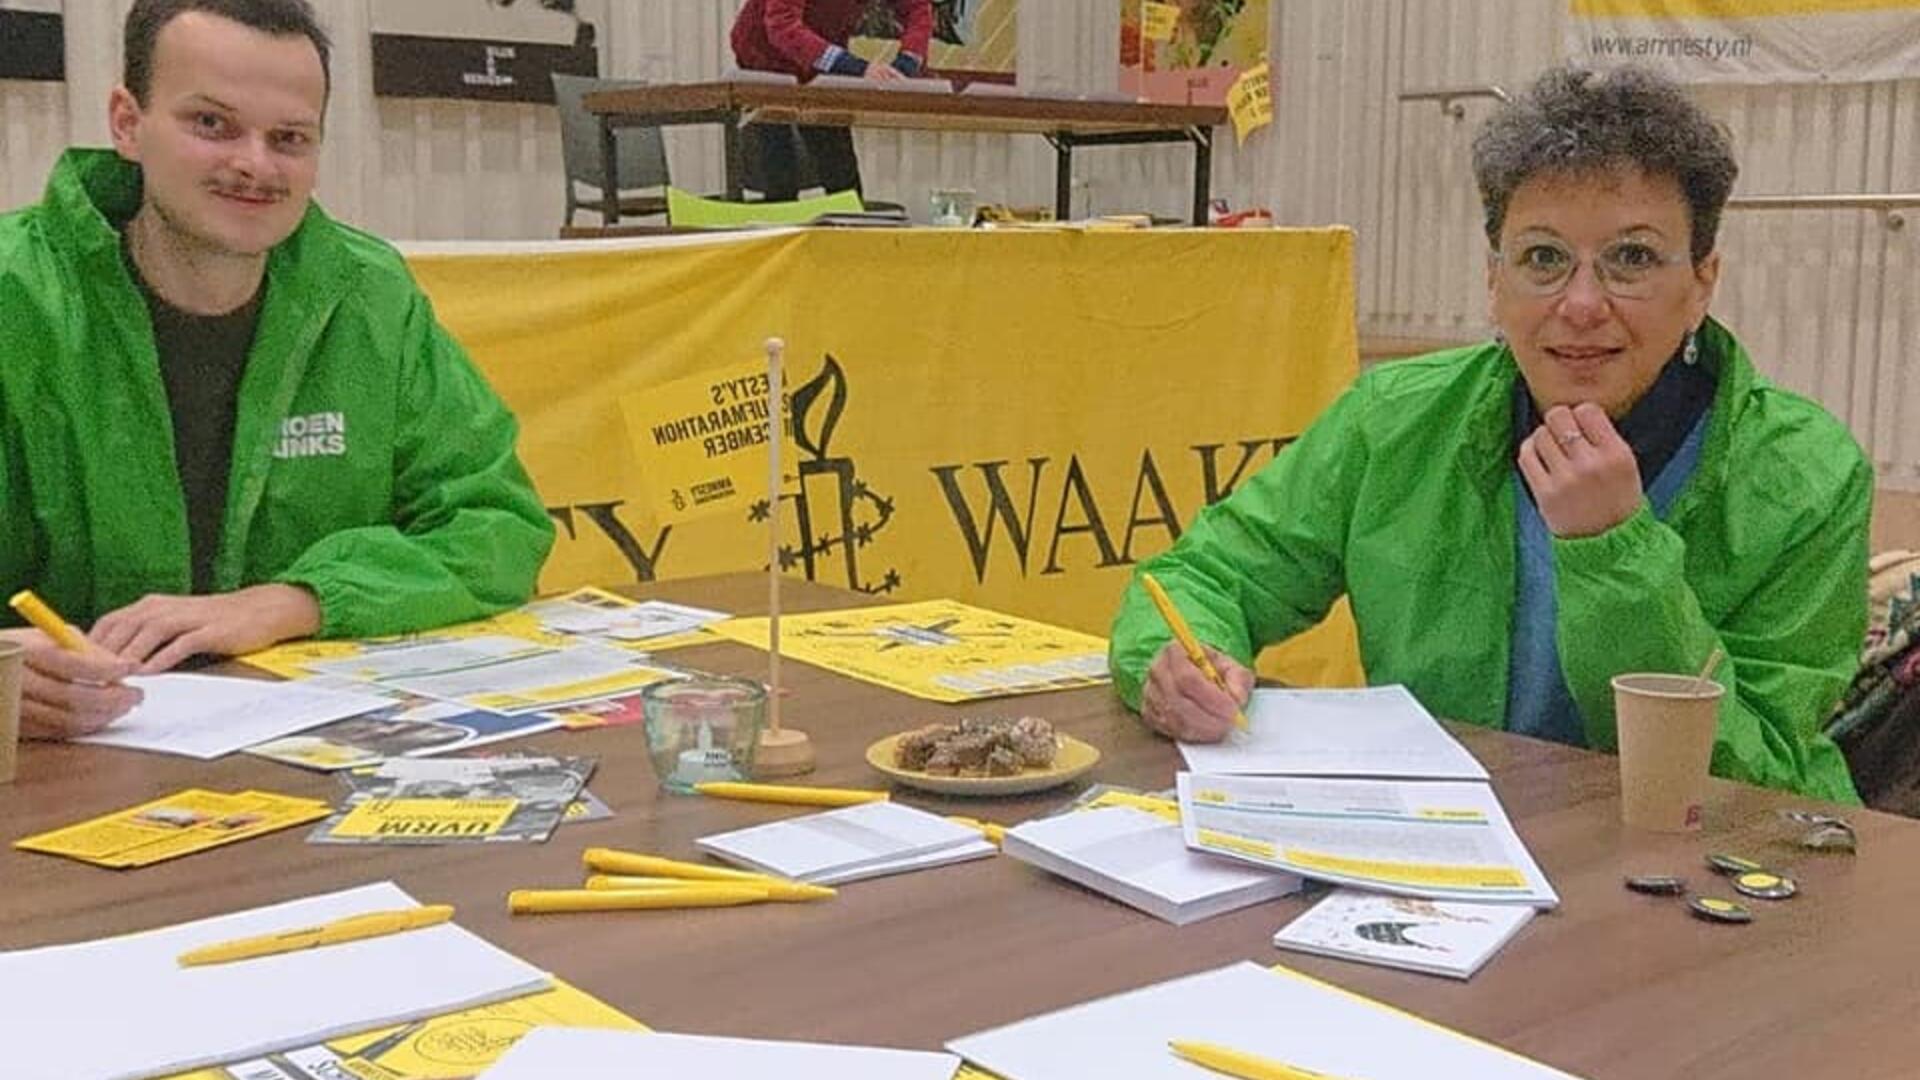 Stan Vergeer en Margriet Leest aan de Amnesty-schrijftafel. Ze hebben allebei een groen jasje aan.